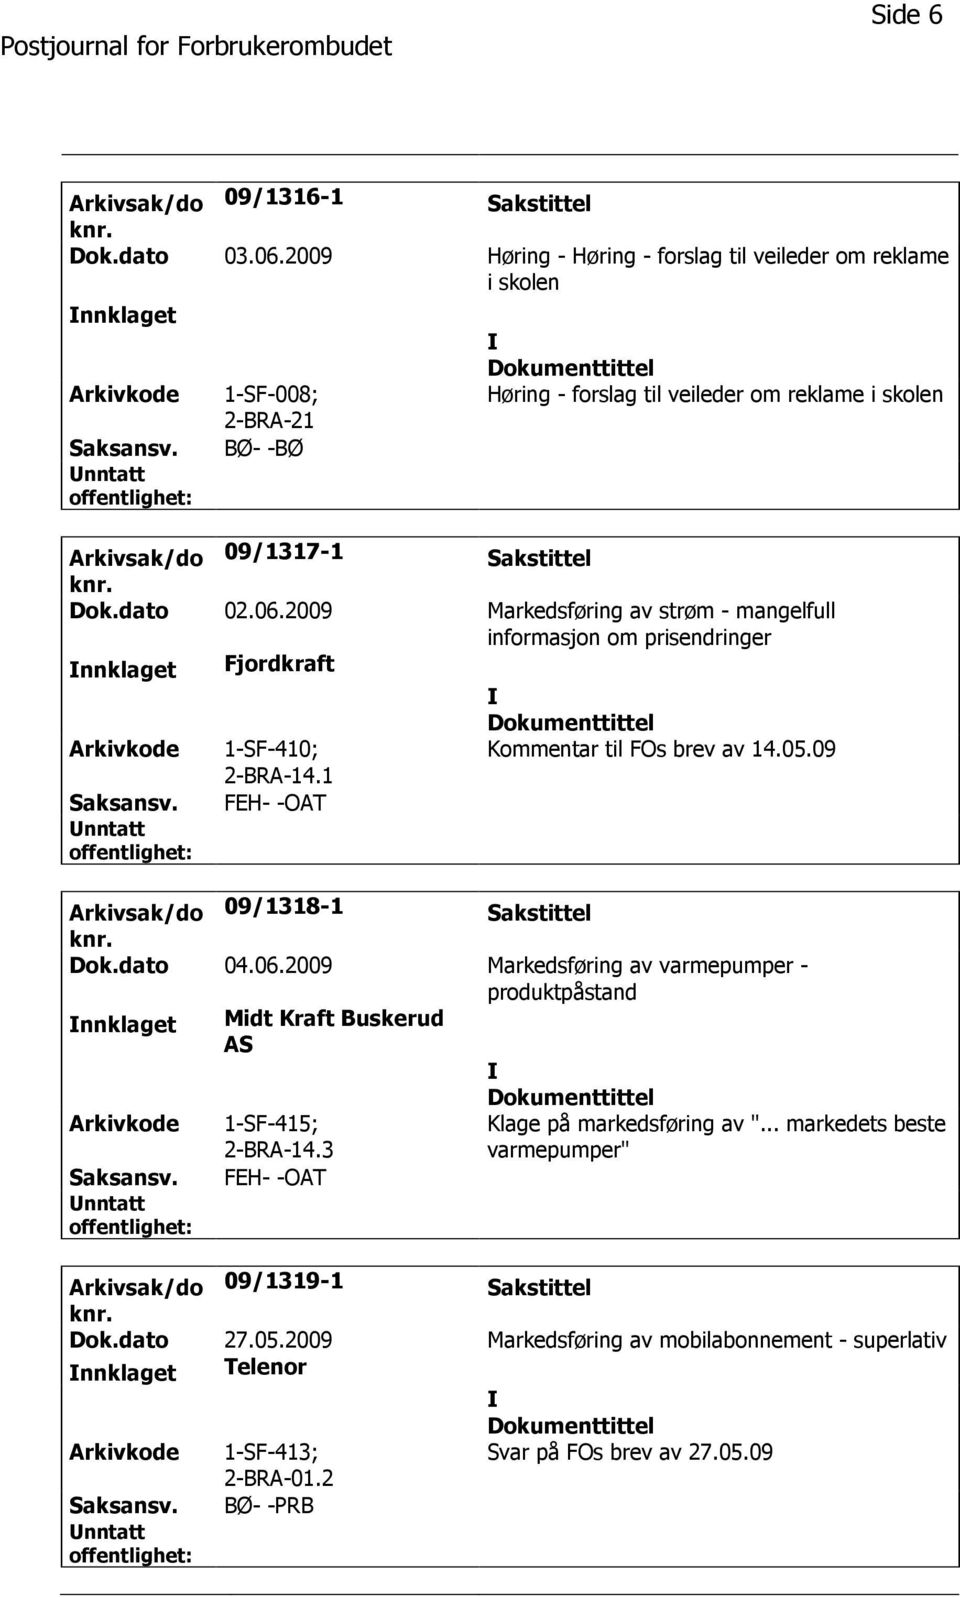 2009 Markedsføring av strøm - mangelfull informasjon om prisendringer nnklaget Fjordkraft Arkivkode 1-SF-410; 2-BRA-14.1 Kommentar til FOs brev av 14.05.09 Saksansv.